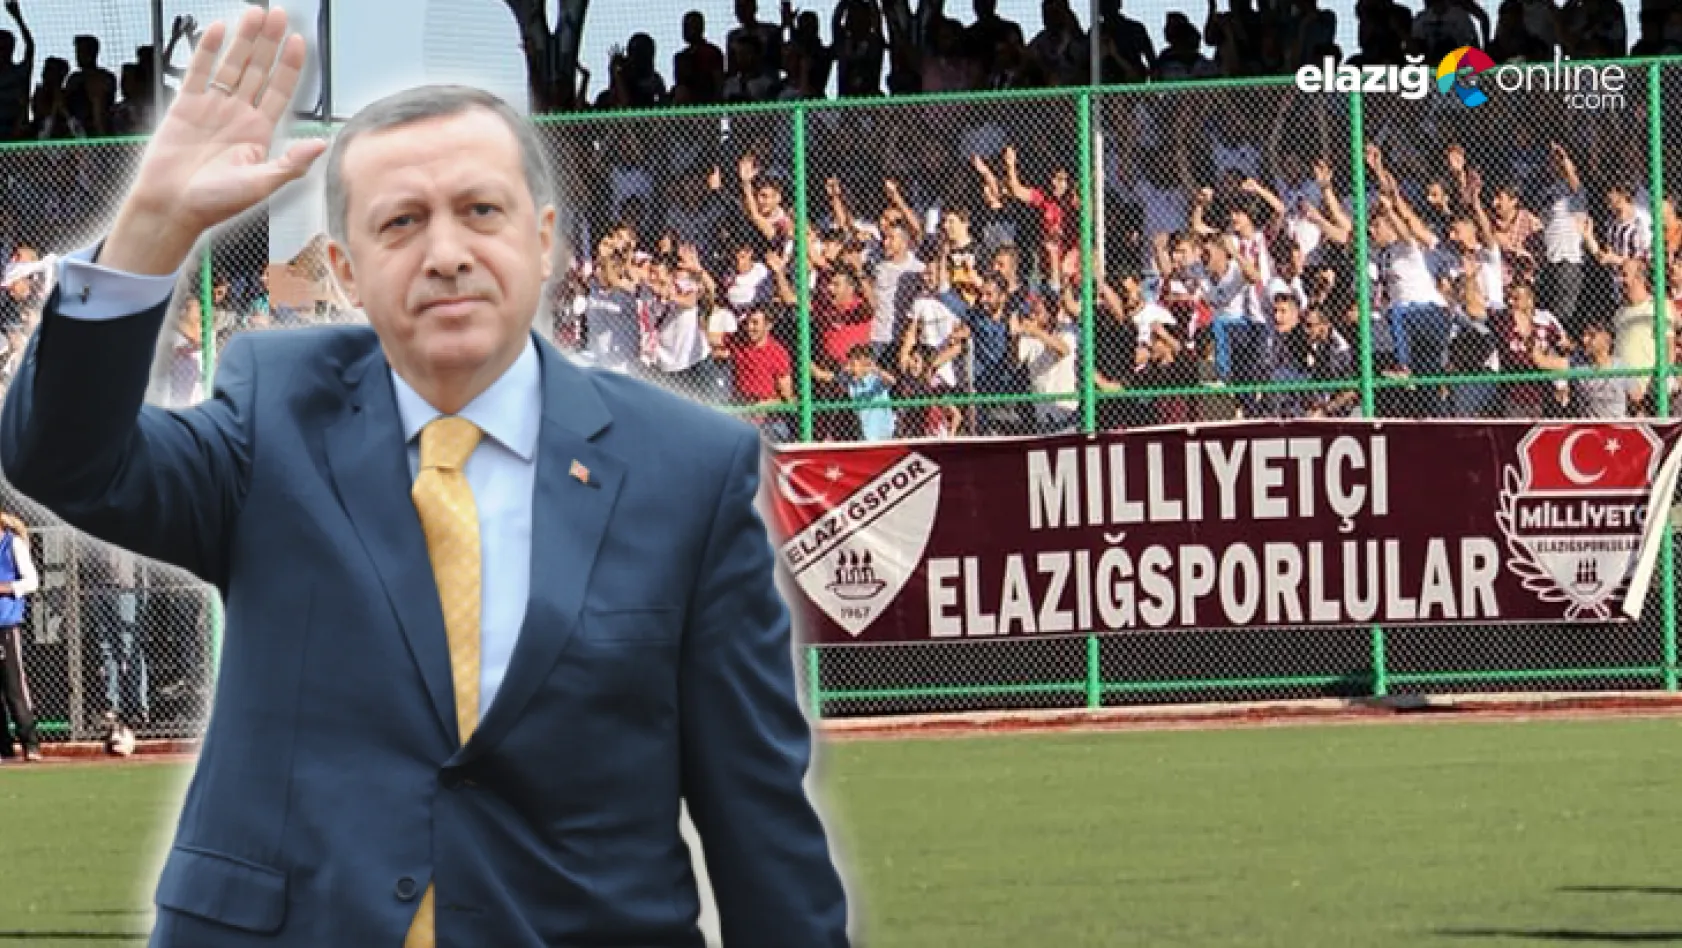 Elazığsporlu taraftarlar Cumhurbaşkanı Recep Tayyip Erdoğan'ı bekliyor!